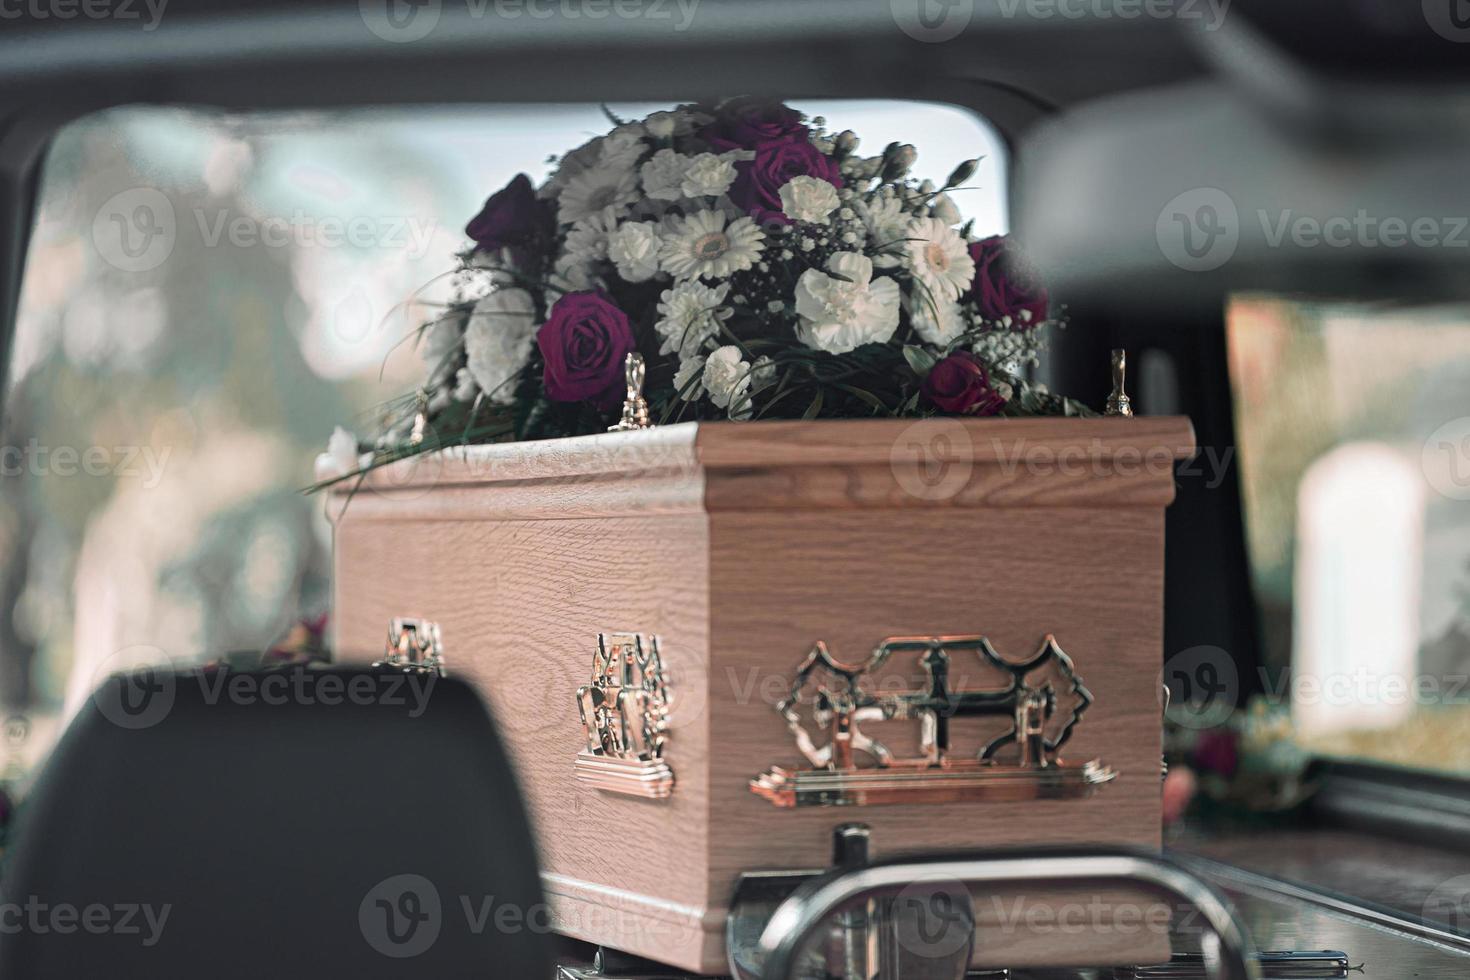 flores fúnebres rosas brancas e lírios dentro de um carro funerário em um funeral em um dia lindo e triste foto